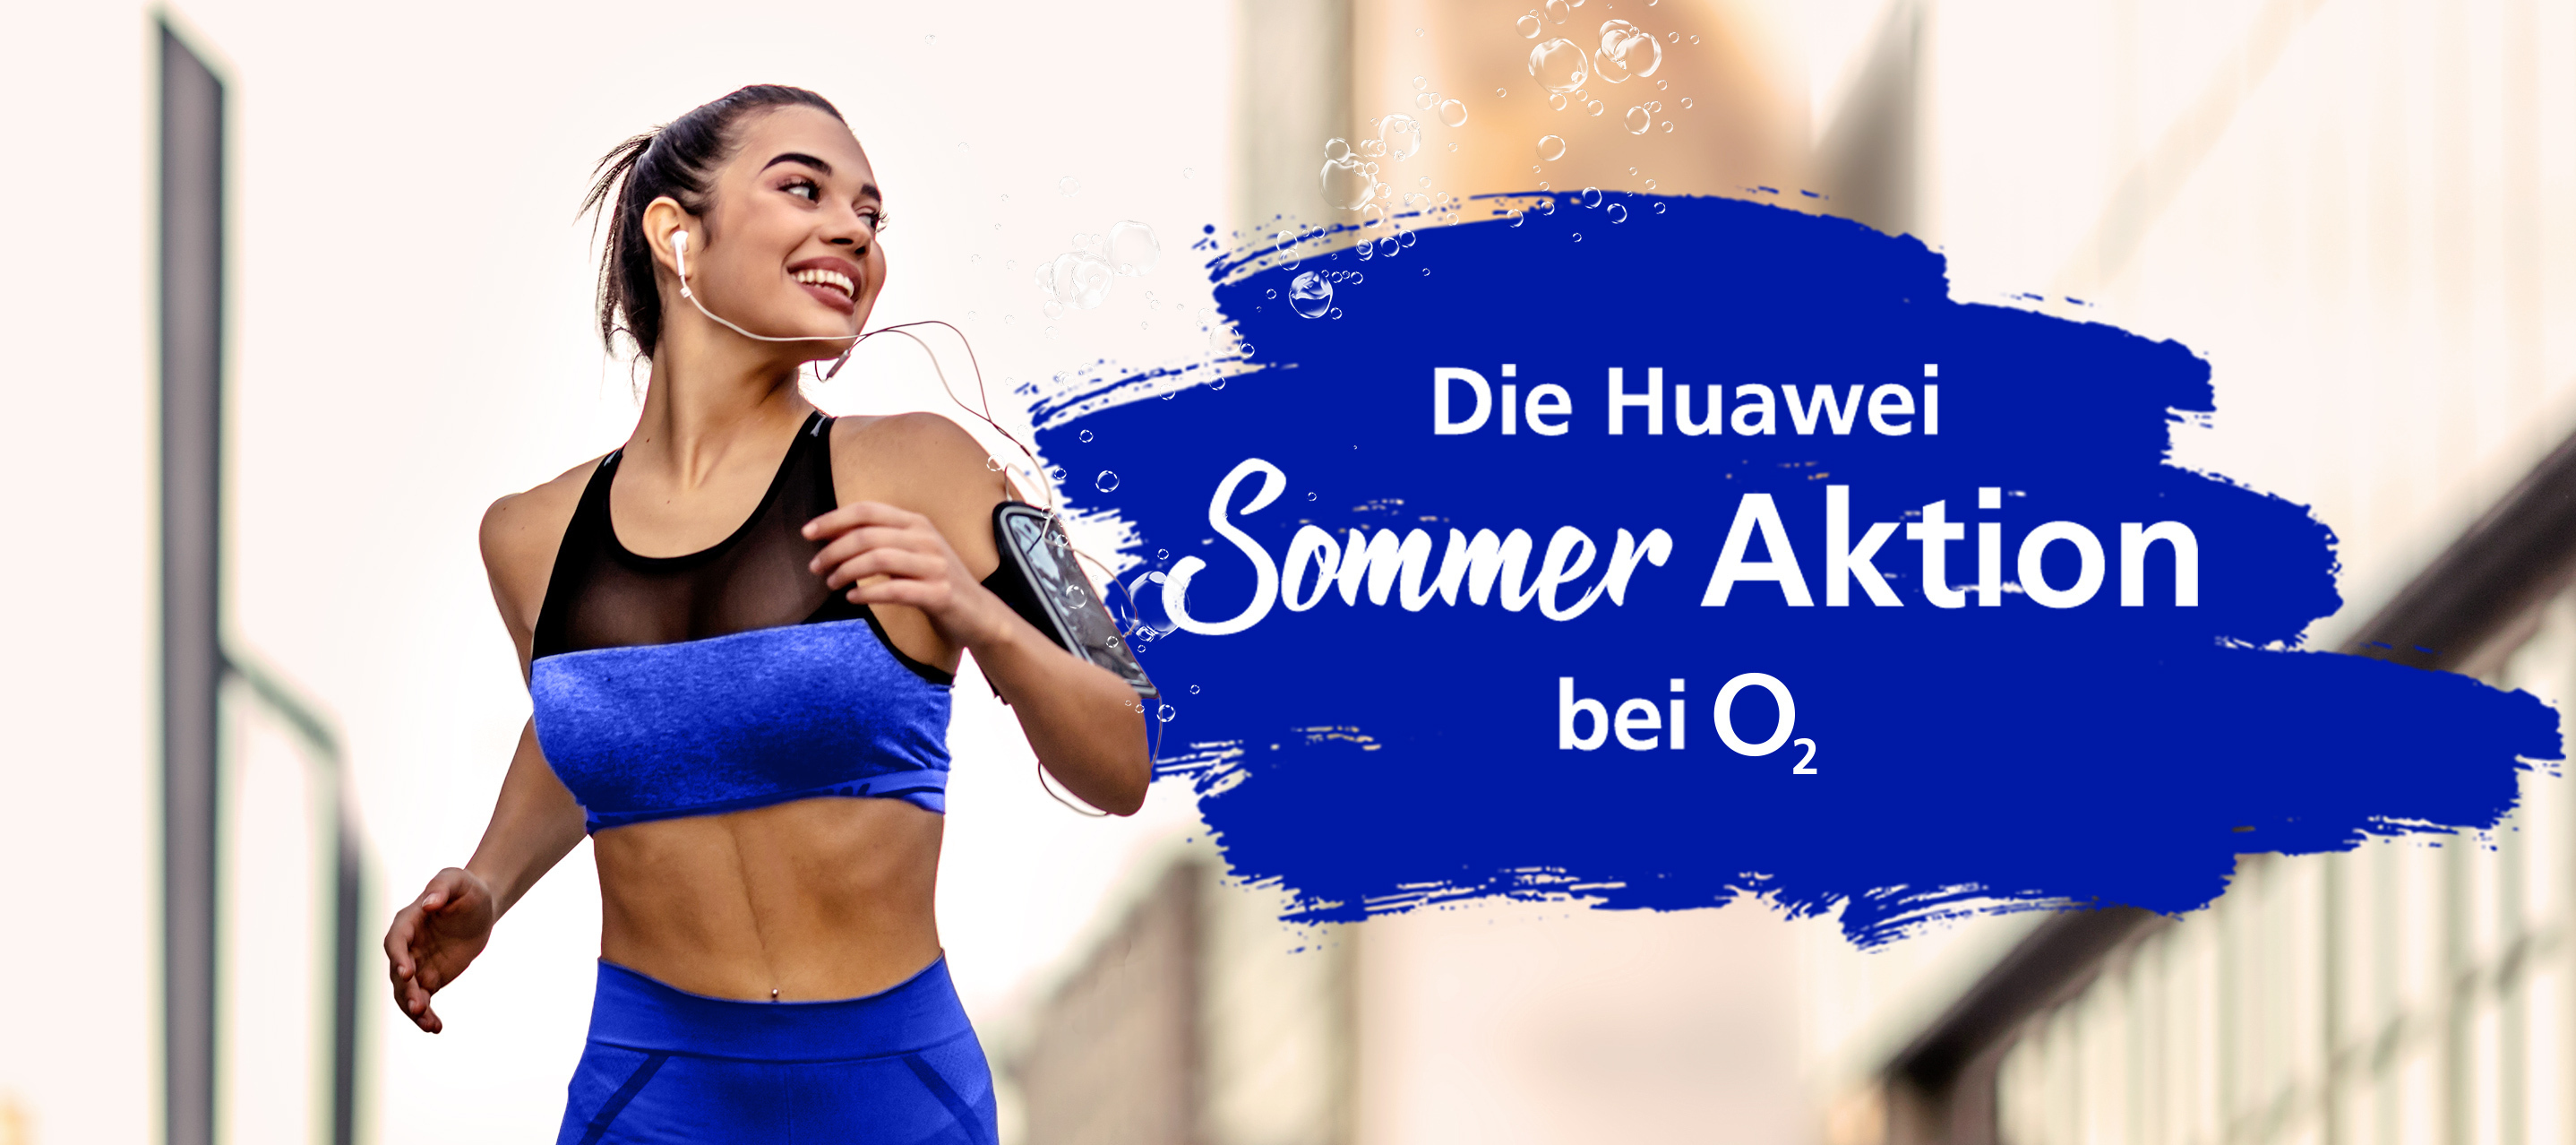 Das sportliche Angebot zum Sommer von Huawei - Jetzt bei O₂